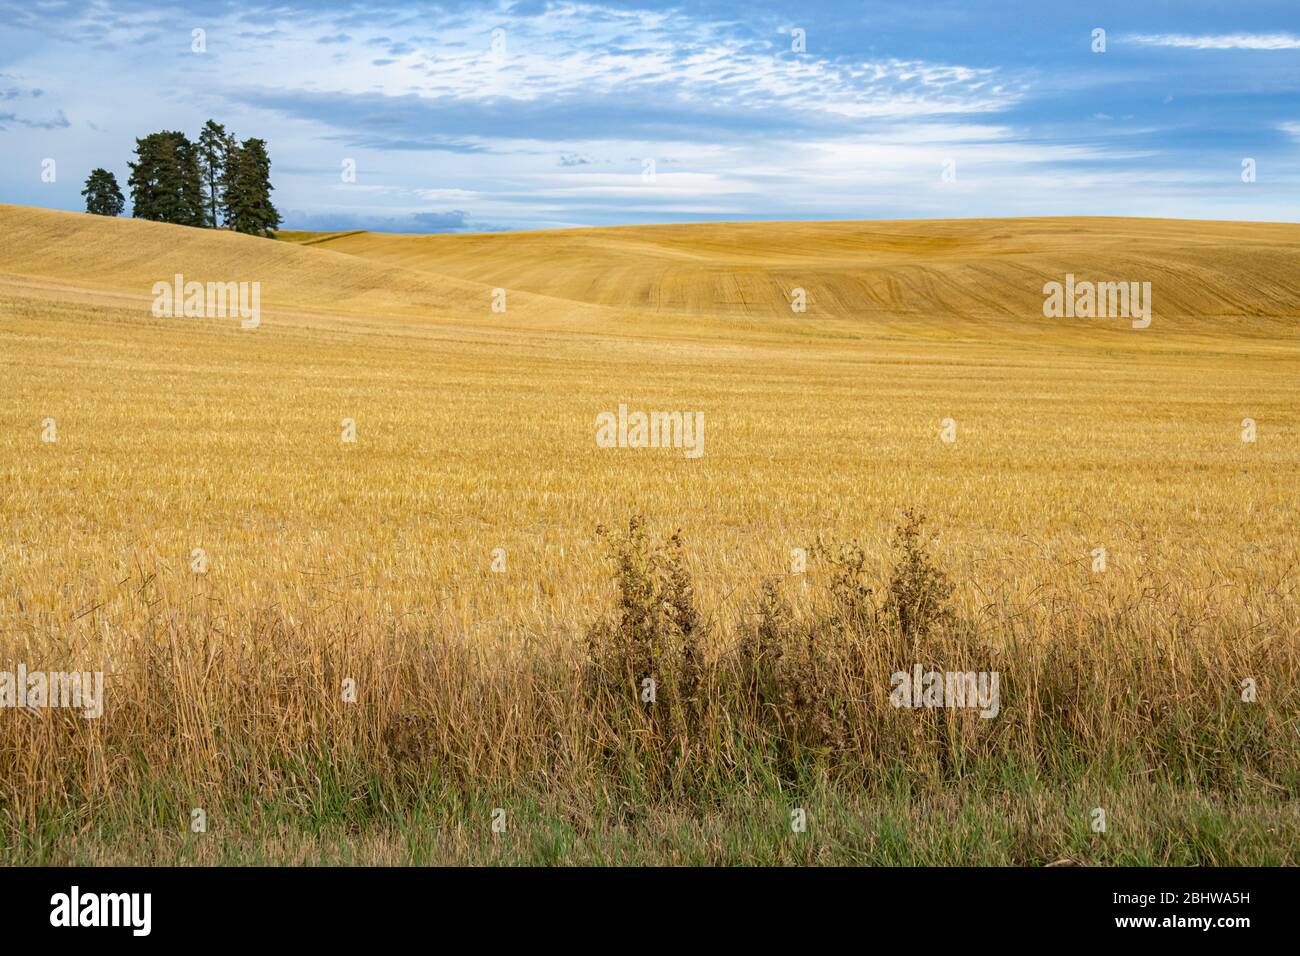 Golden Rolling Hills of Wheat Fields, Palouse, État de Washington Banque D'Images